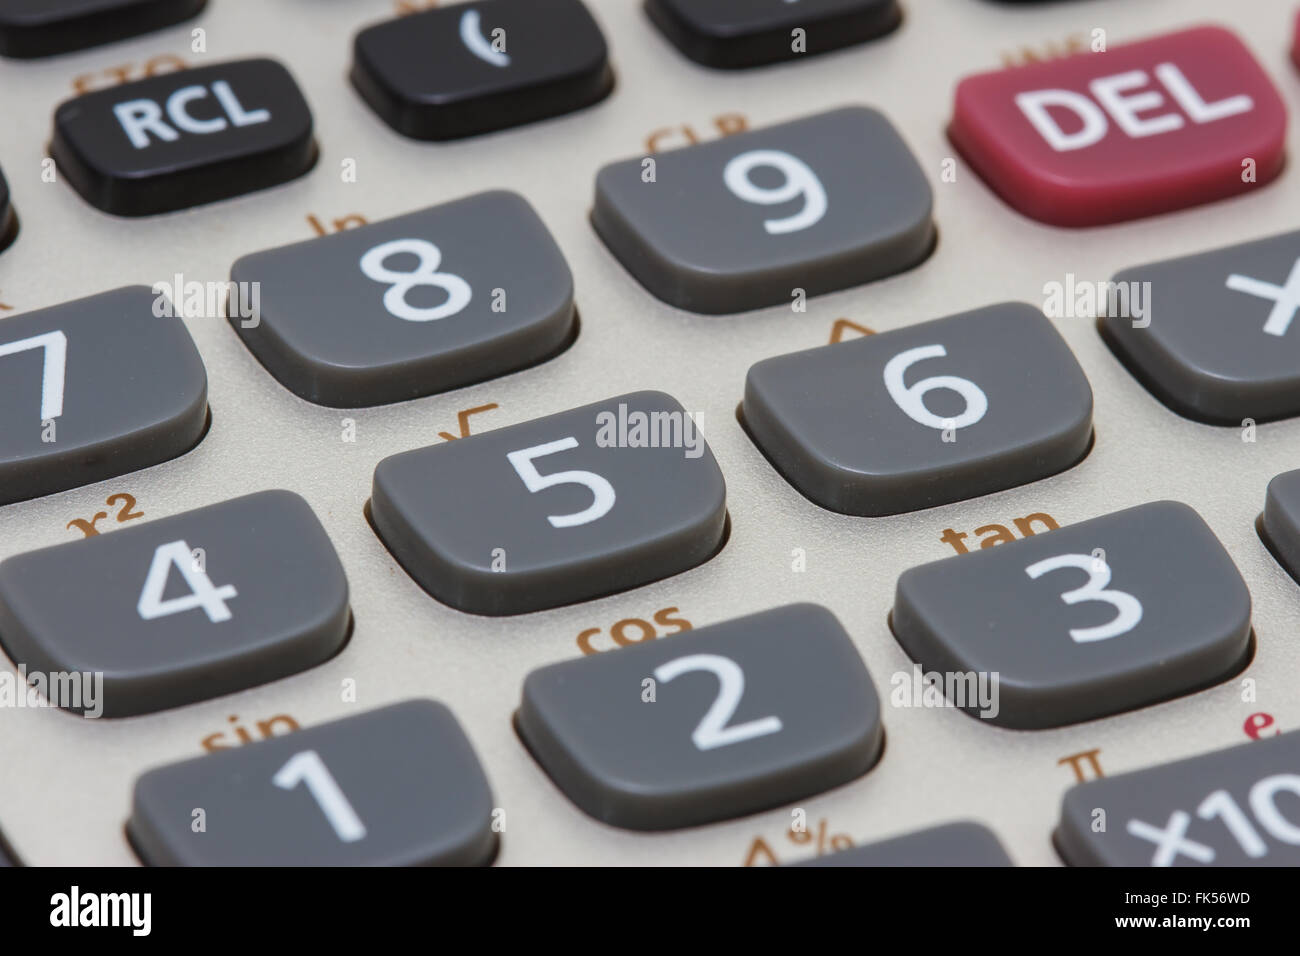 Calculator close-up shot focus Stock Photo